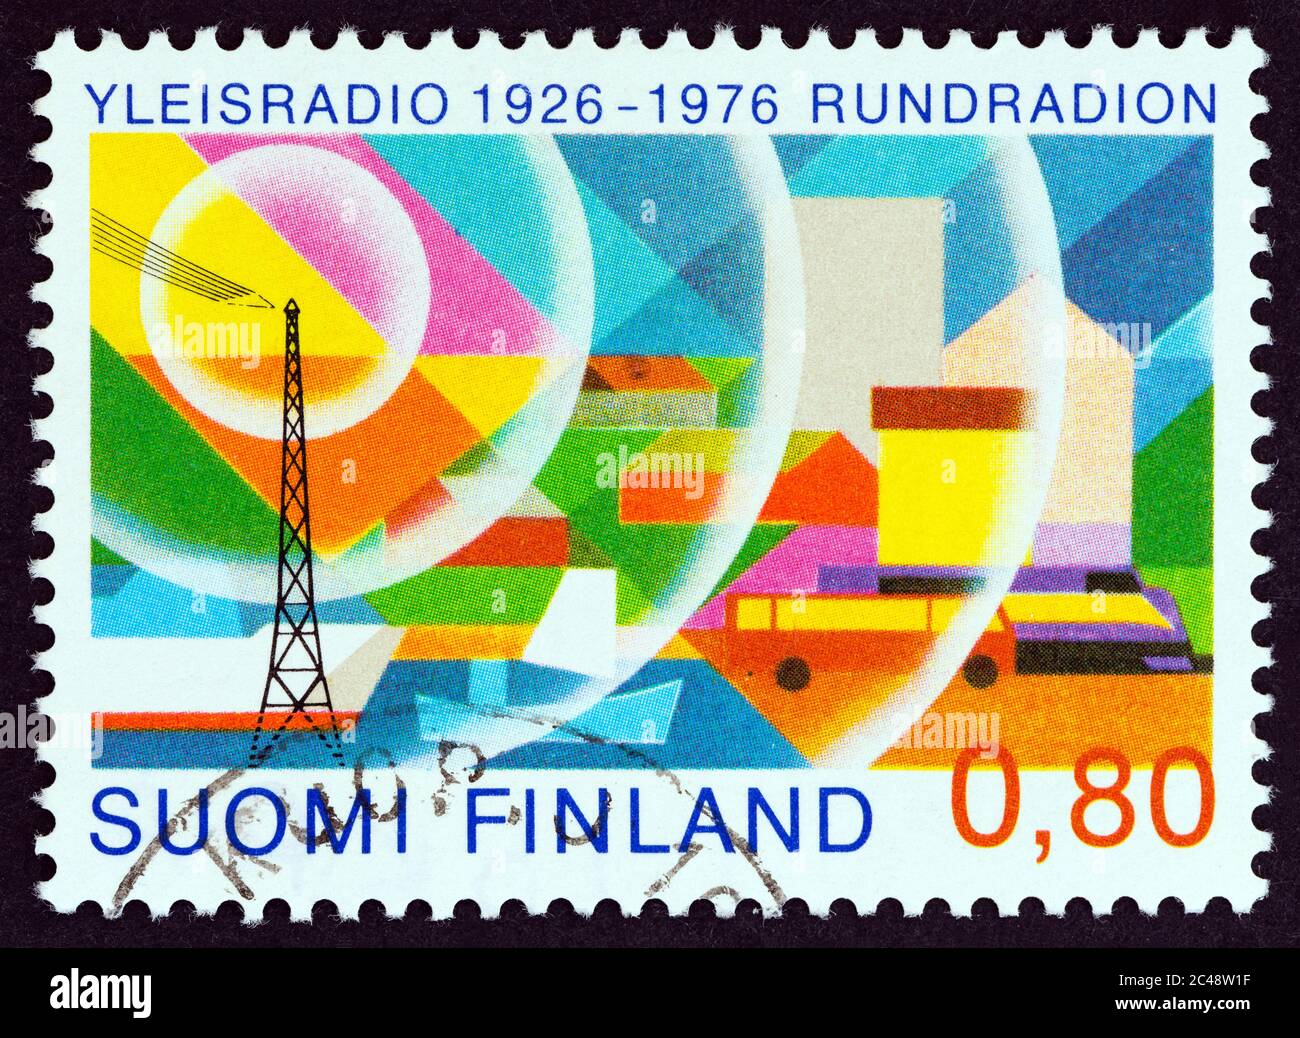 FINNLAND - UM 1976: Eine in Finnland gedruckte Briefmarke, die zum 50. Jahrestag des finnischen Rundfunks herausgegeben wurde, zeigt Radio Broadcasting Stockfoto